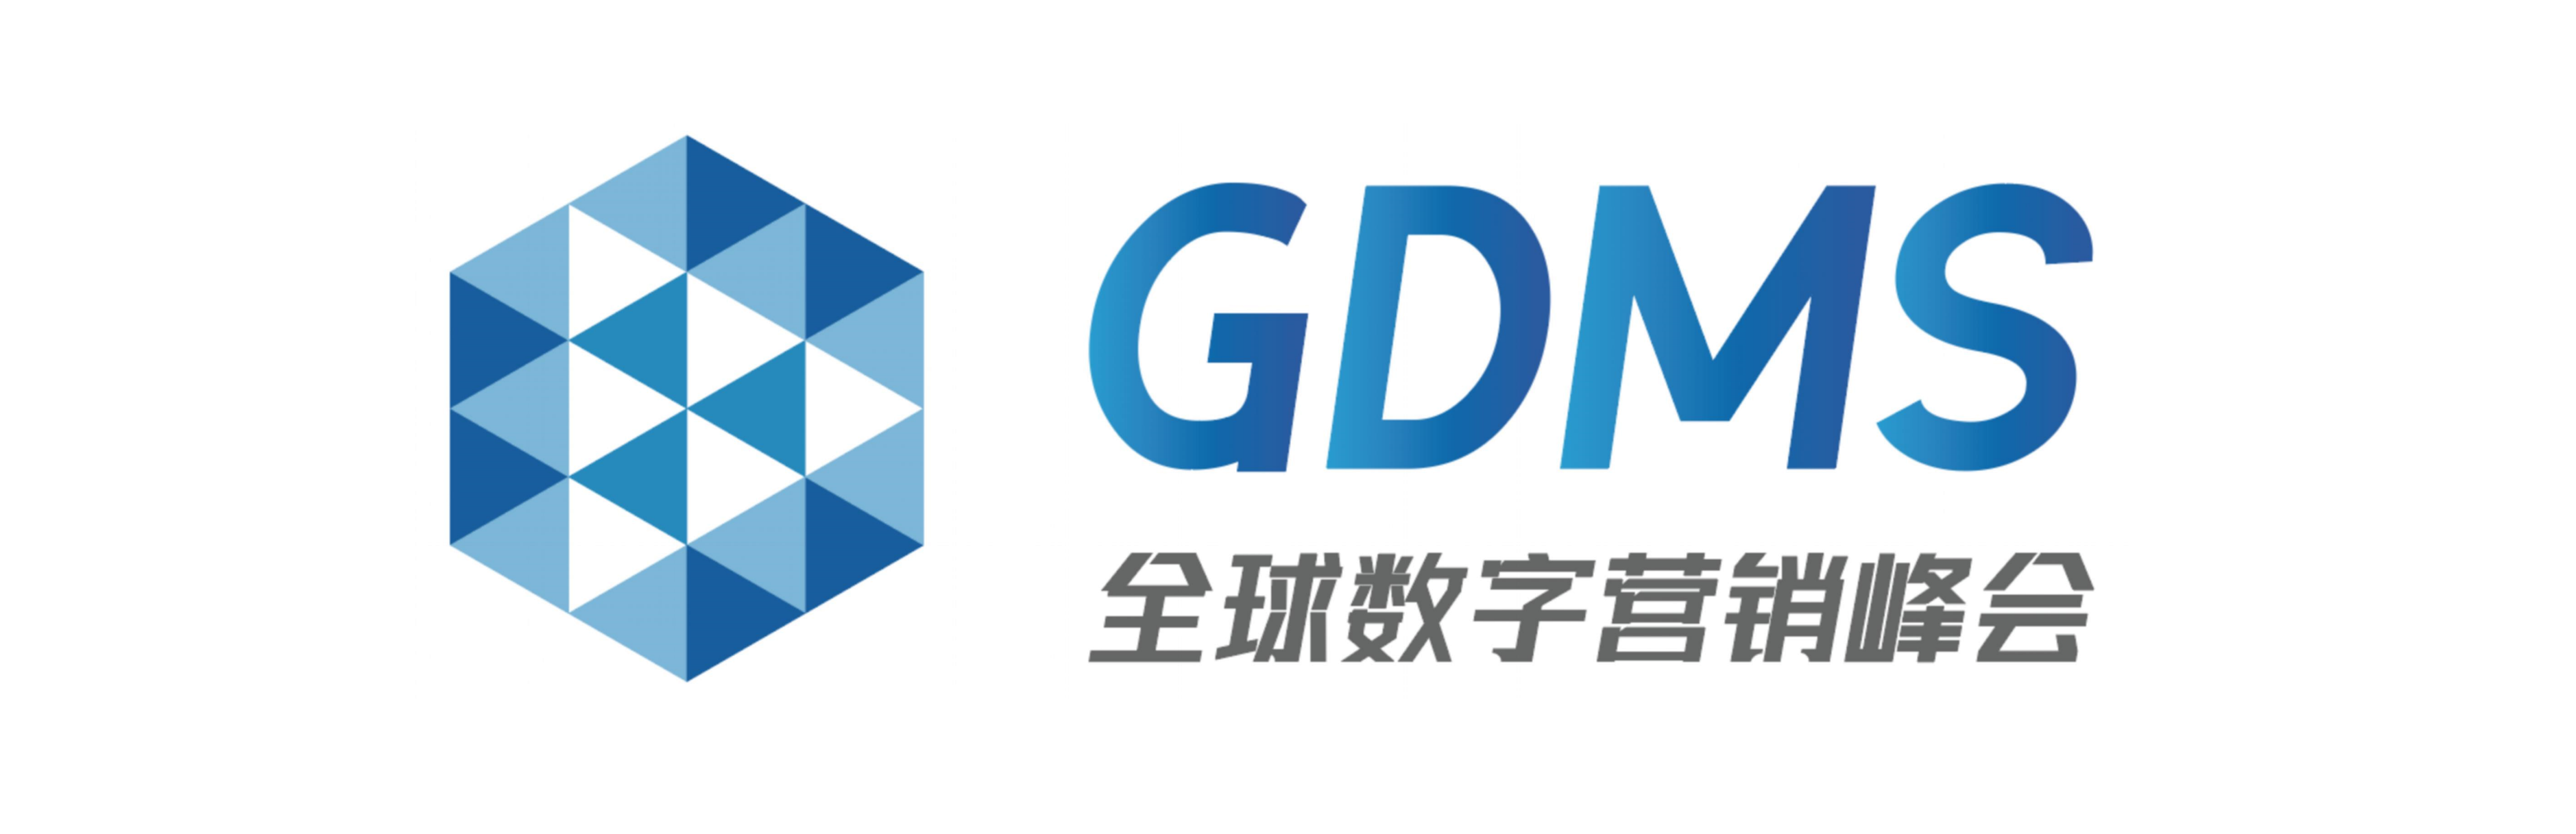 GDMS 全球数字营销峰会- 年度品牌营销盛典